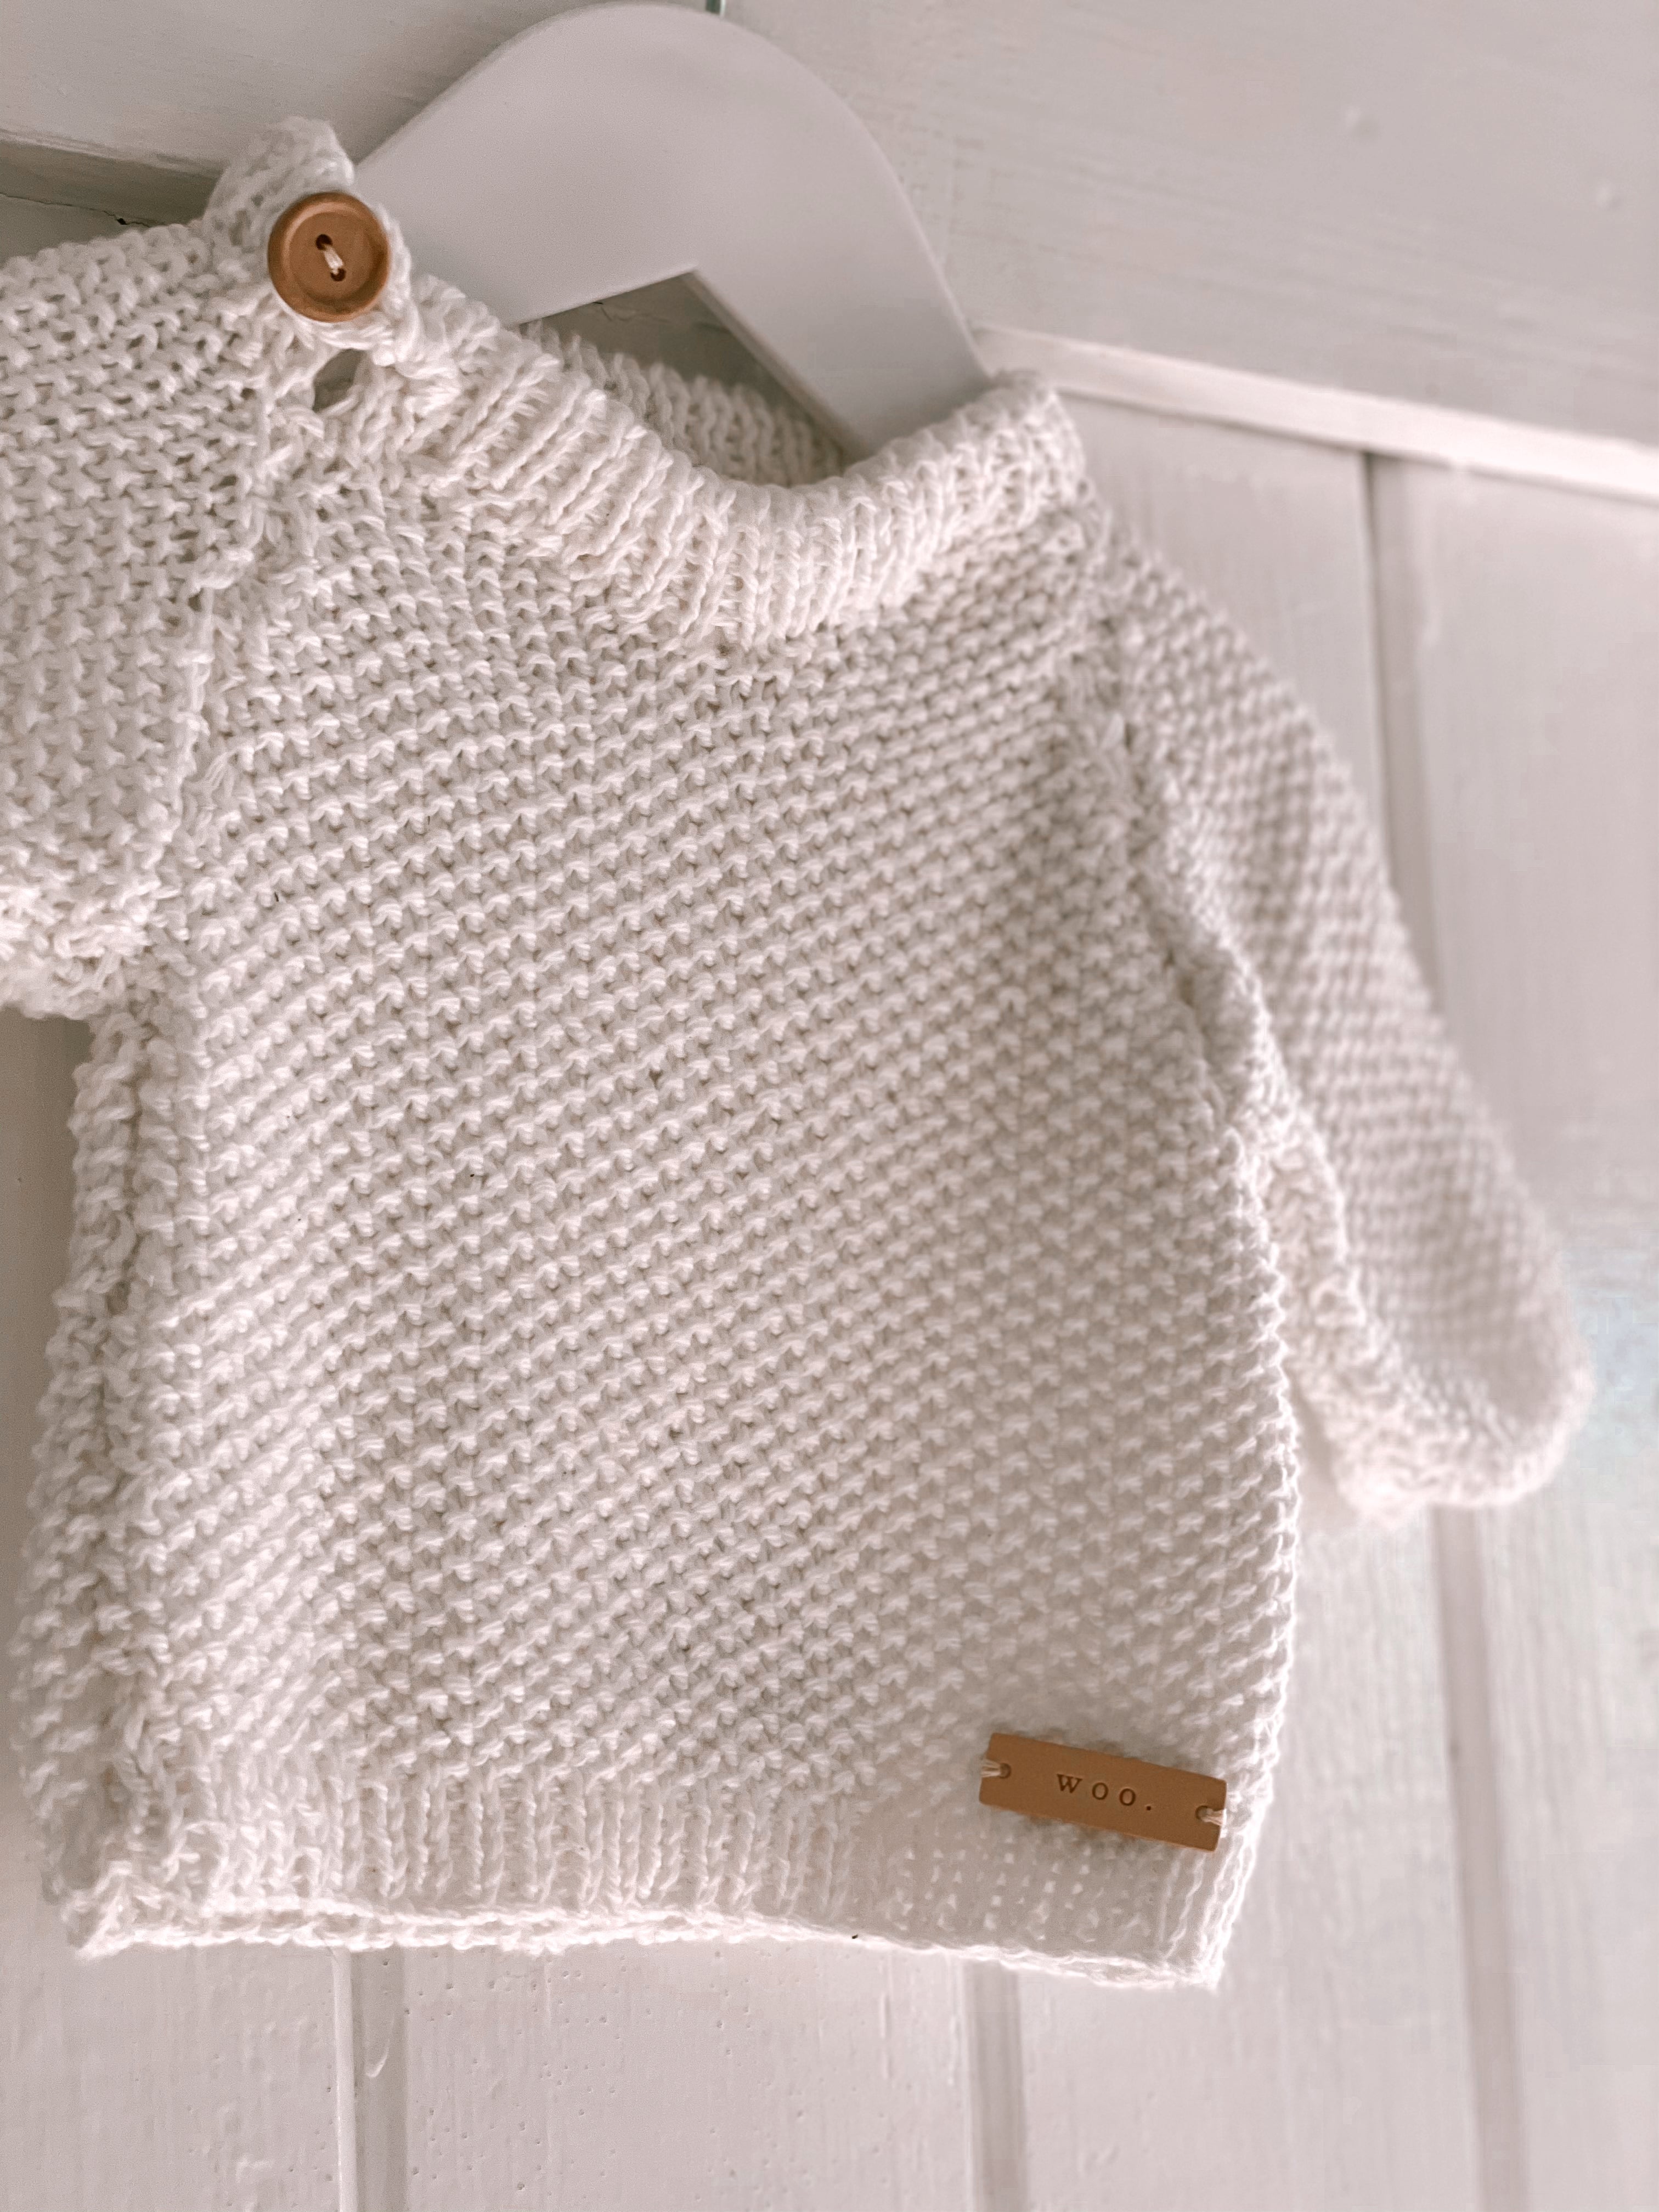 White Cotton Moss Stitch Knit Set